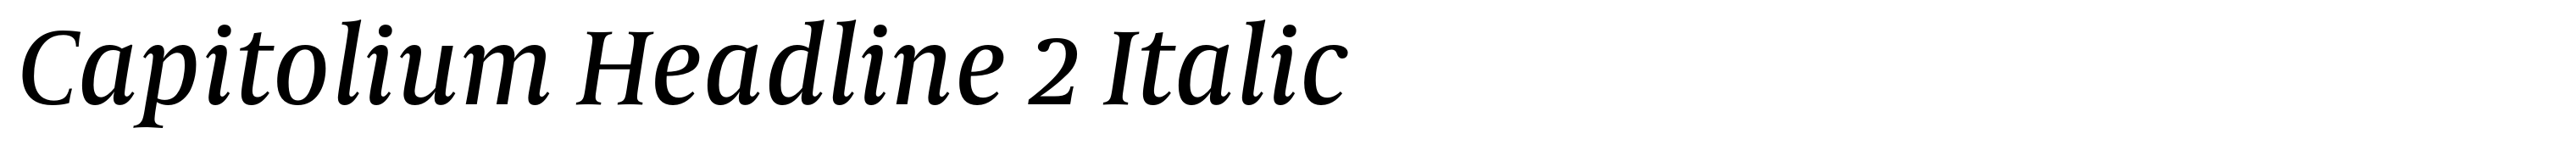 Capitolium Headline 2 Italic